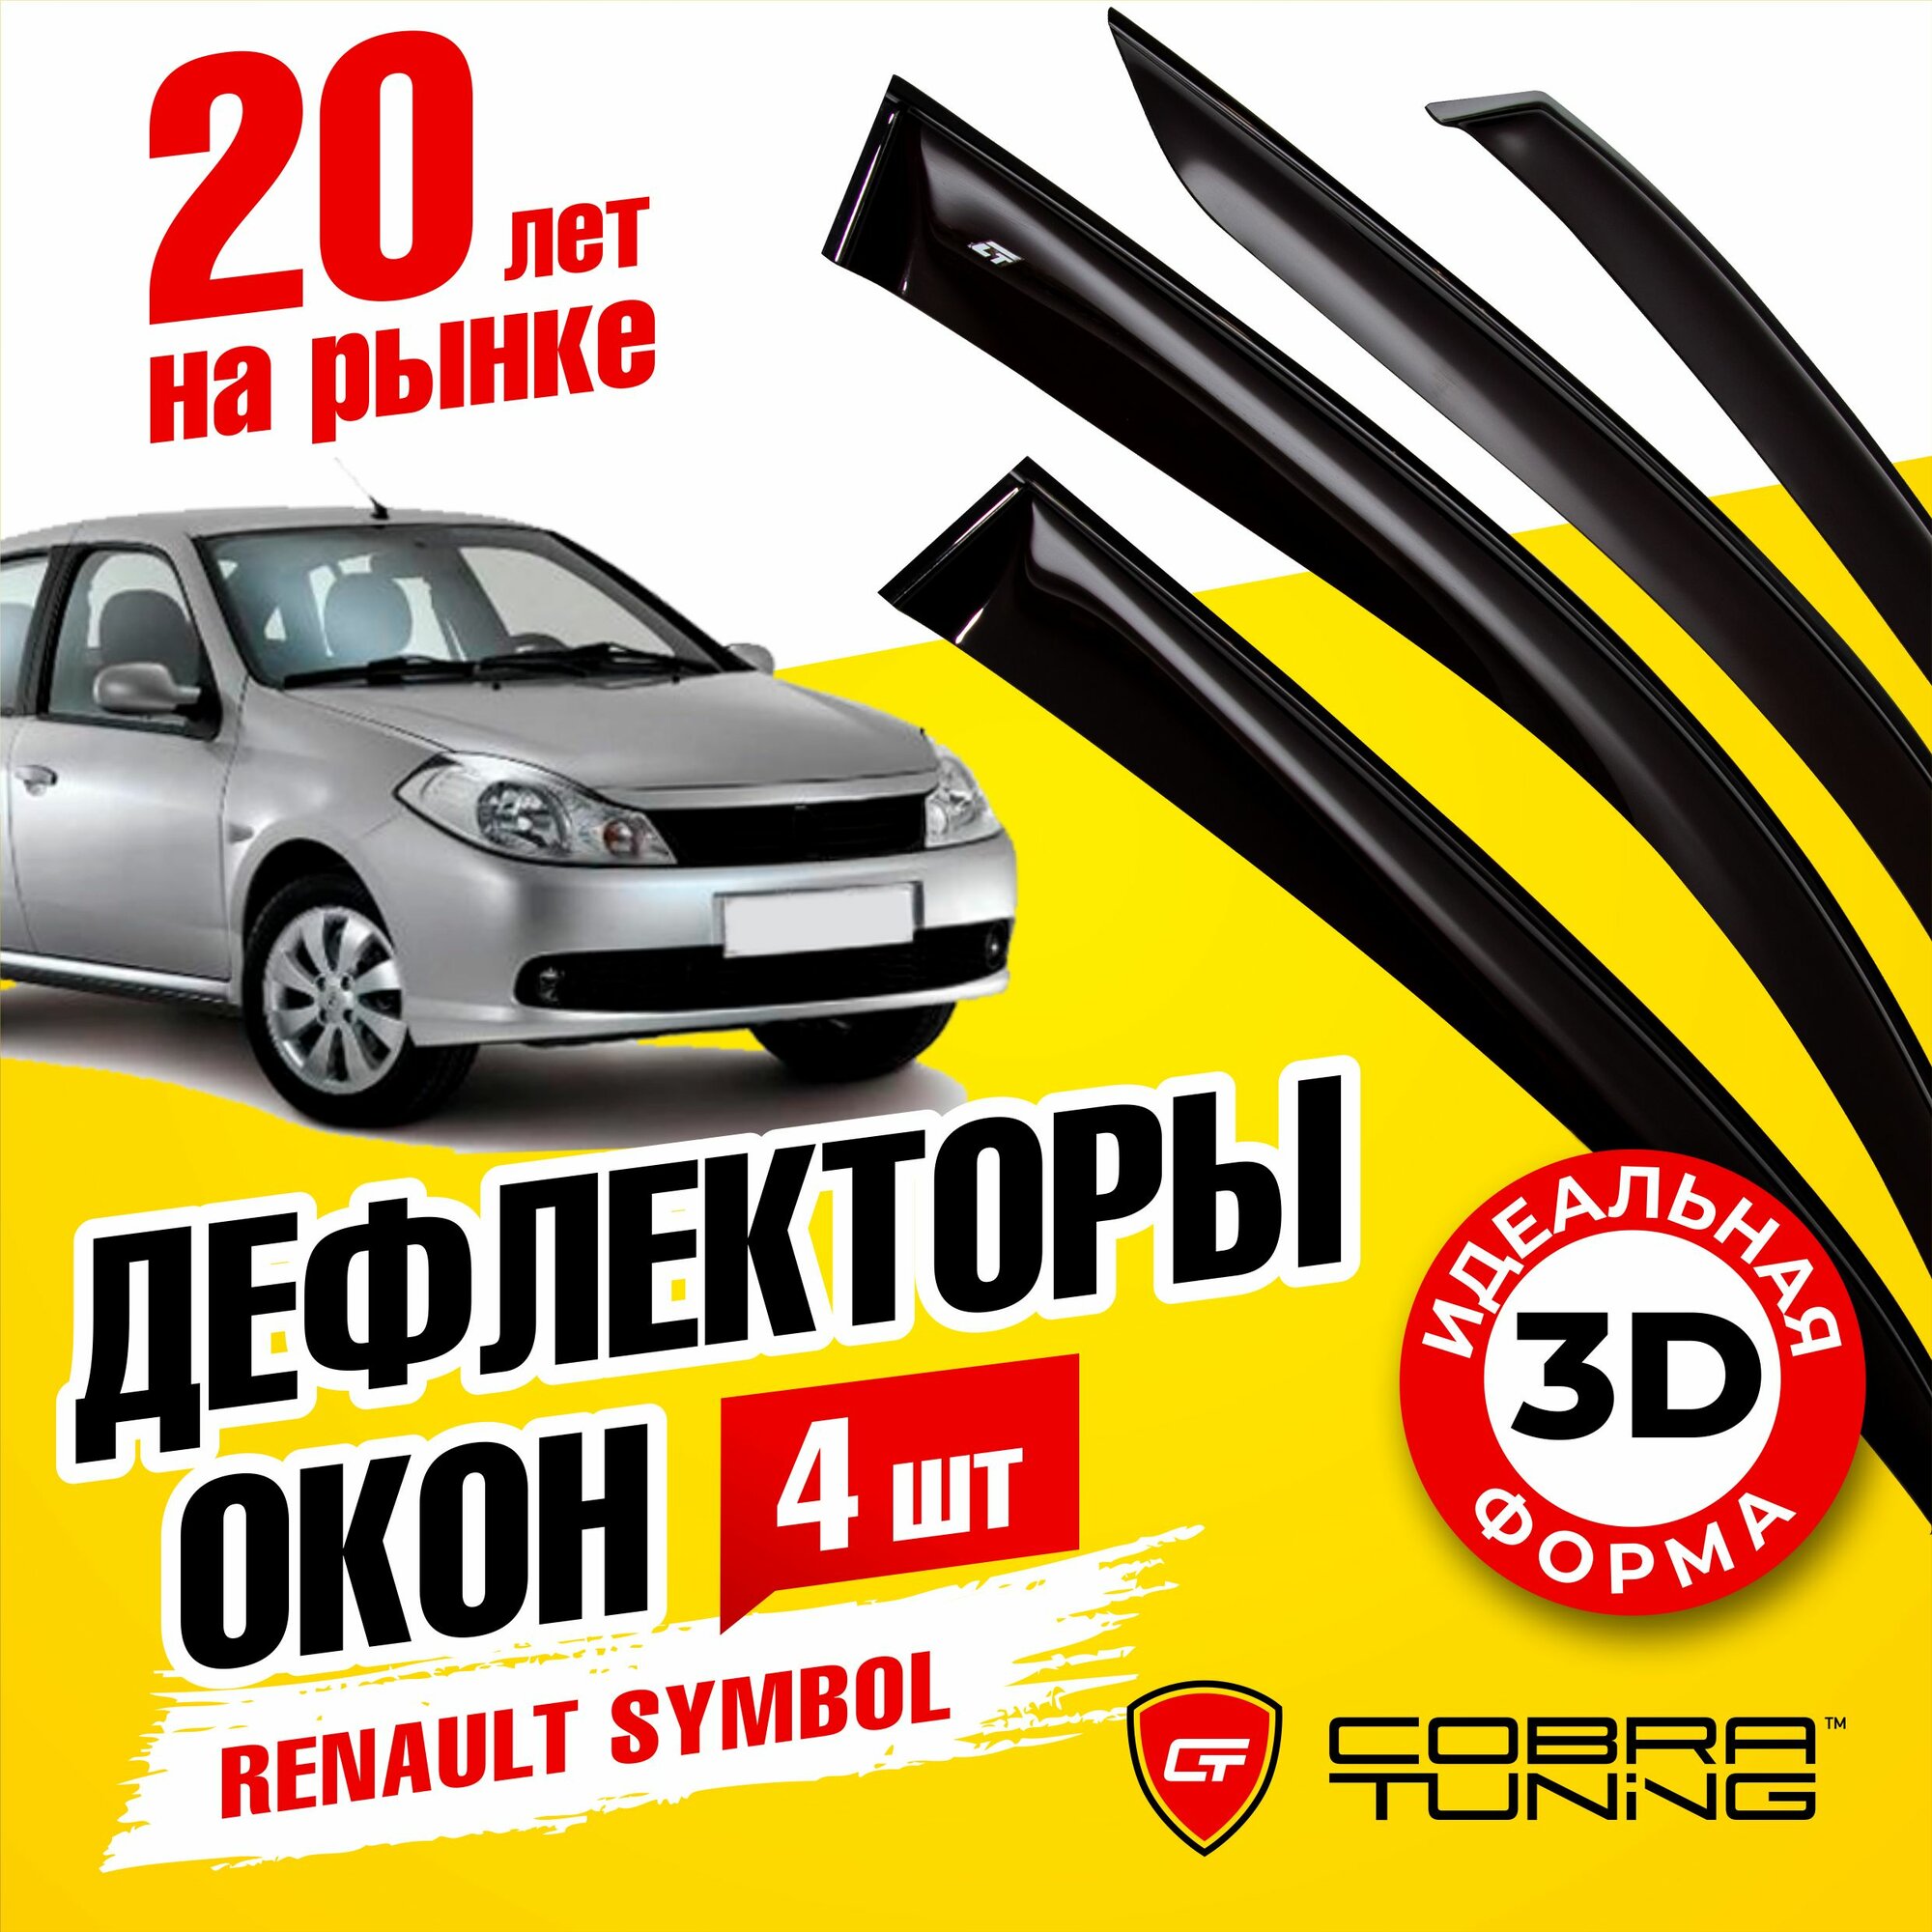 Дефлекторы боковых стекол Cobra Tuning на Renault Symbol 2 ll Sedan 5d 2008-2012 - Ветровики боковых окон для Рено Симбол 2 ll Седан 5 дв. 2008 - 2012